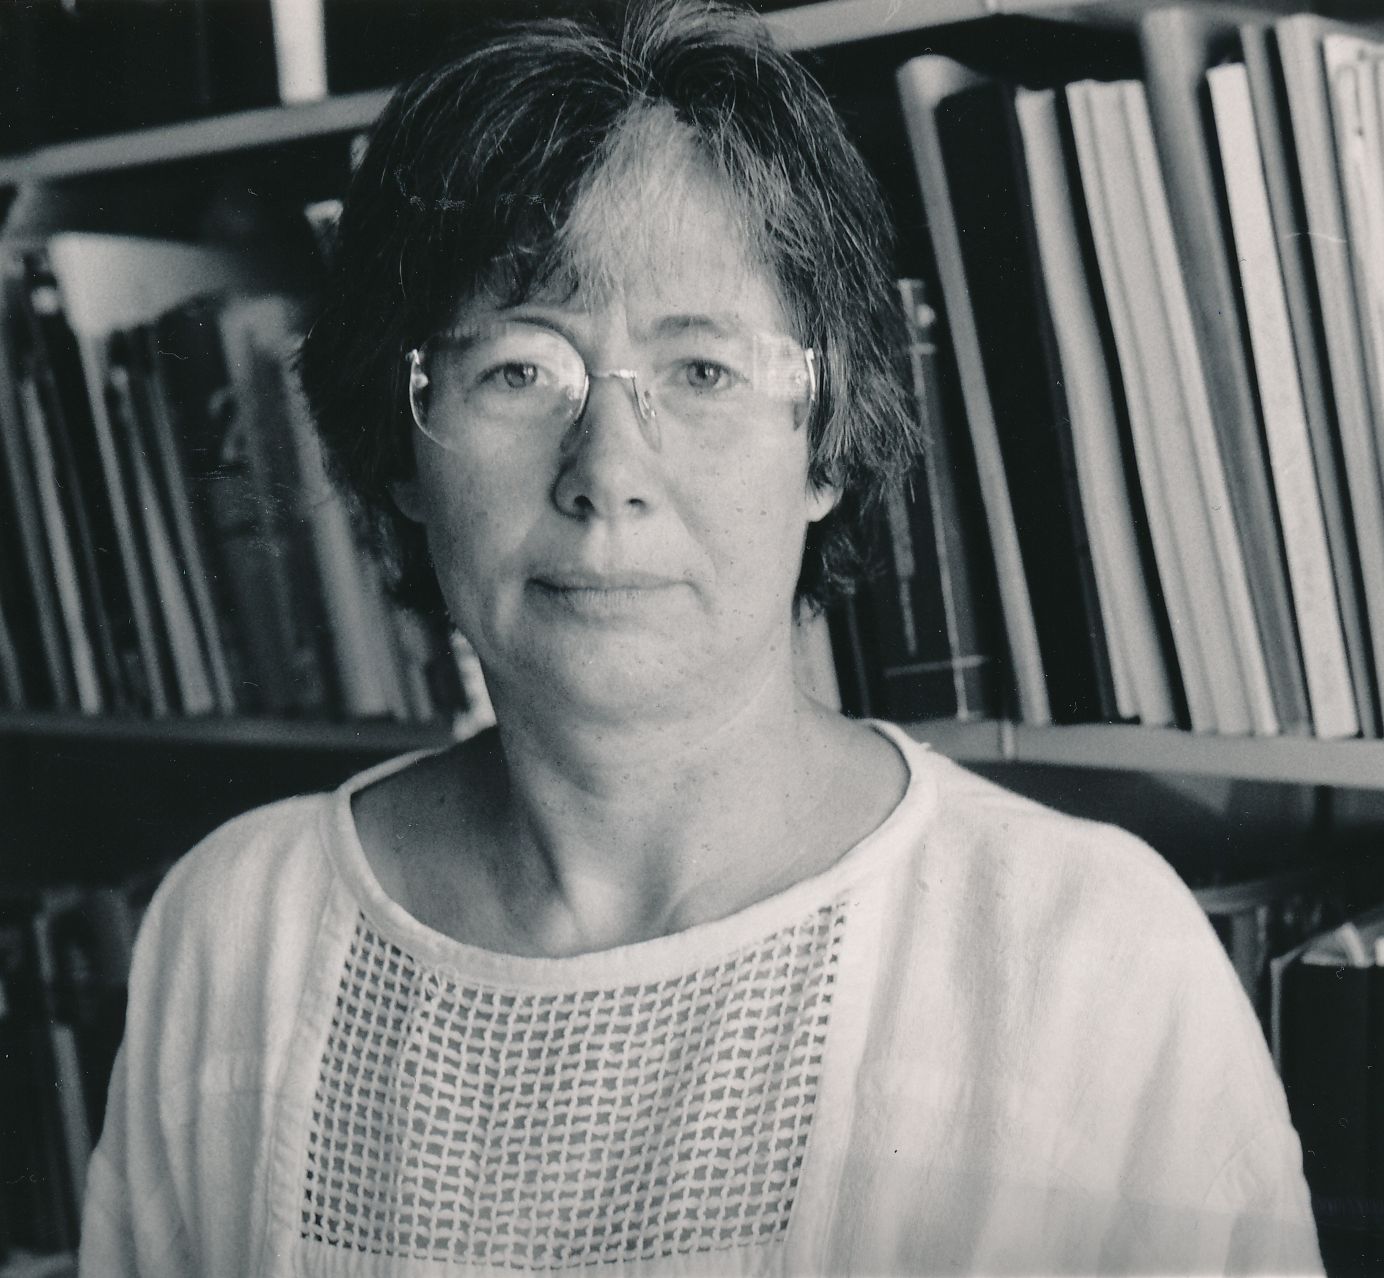 Hannelore Schwedes im Jahre 1989 vor einem Bücherregal. Sie trägt eine randlose Brille und eine helle Bluse und blickt direkt in die Kamera.